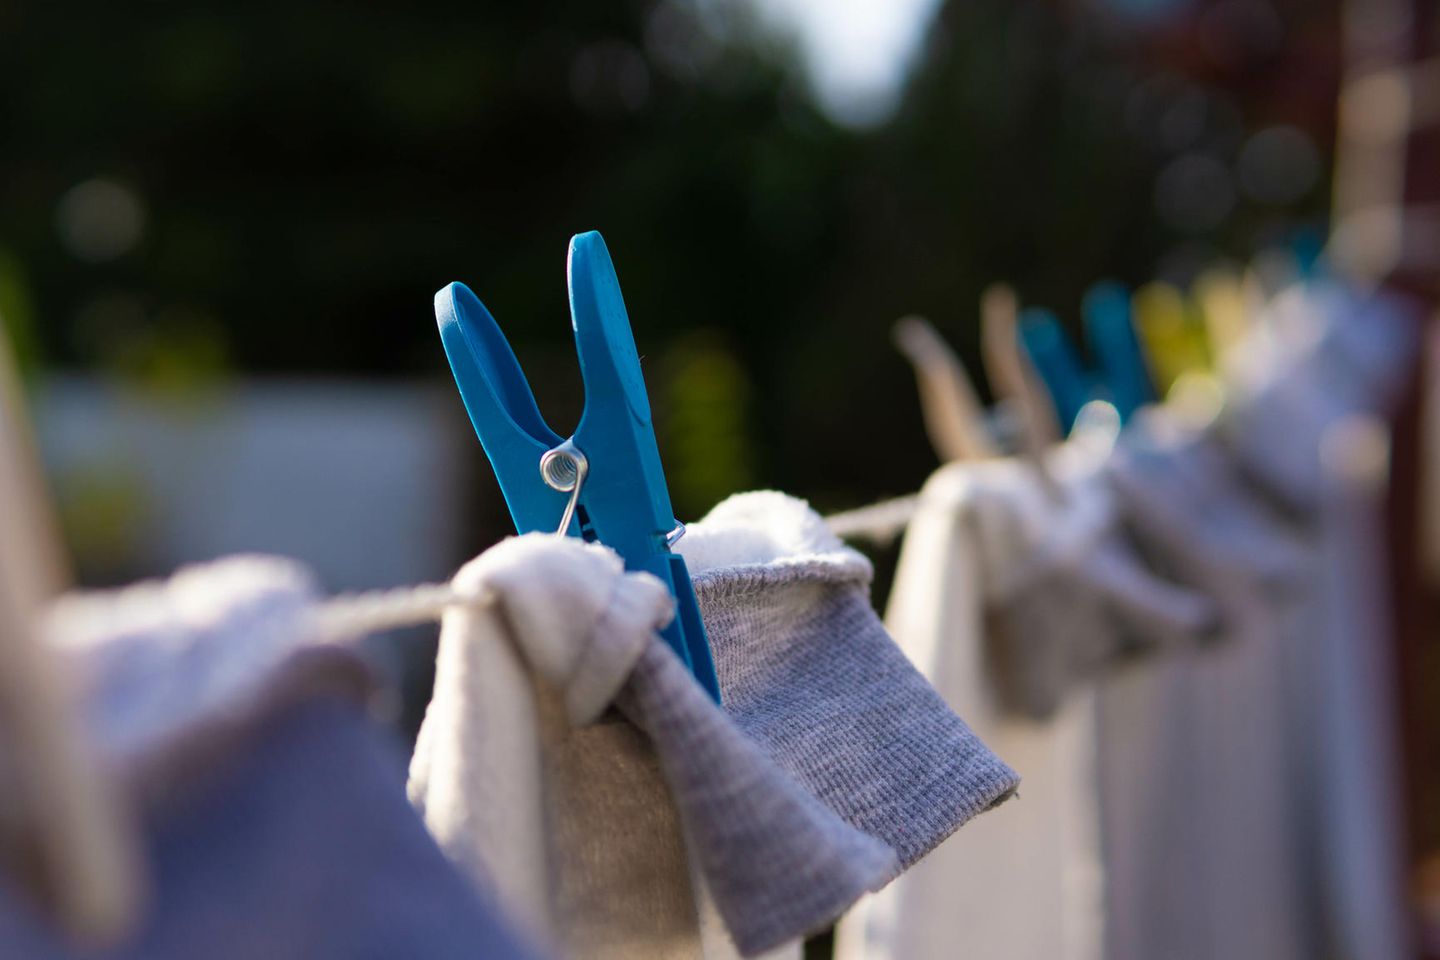 Wäsche an Wäscheklammern aufgehängt draußen auf einer Wäscheleine